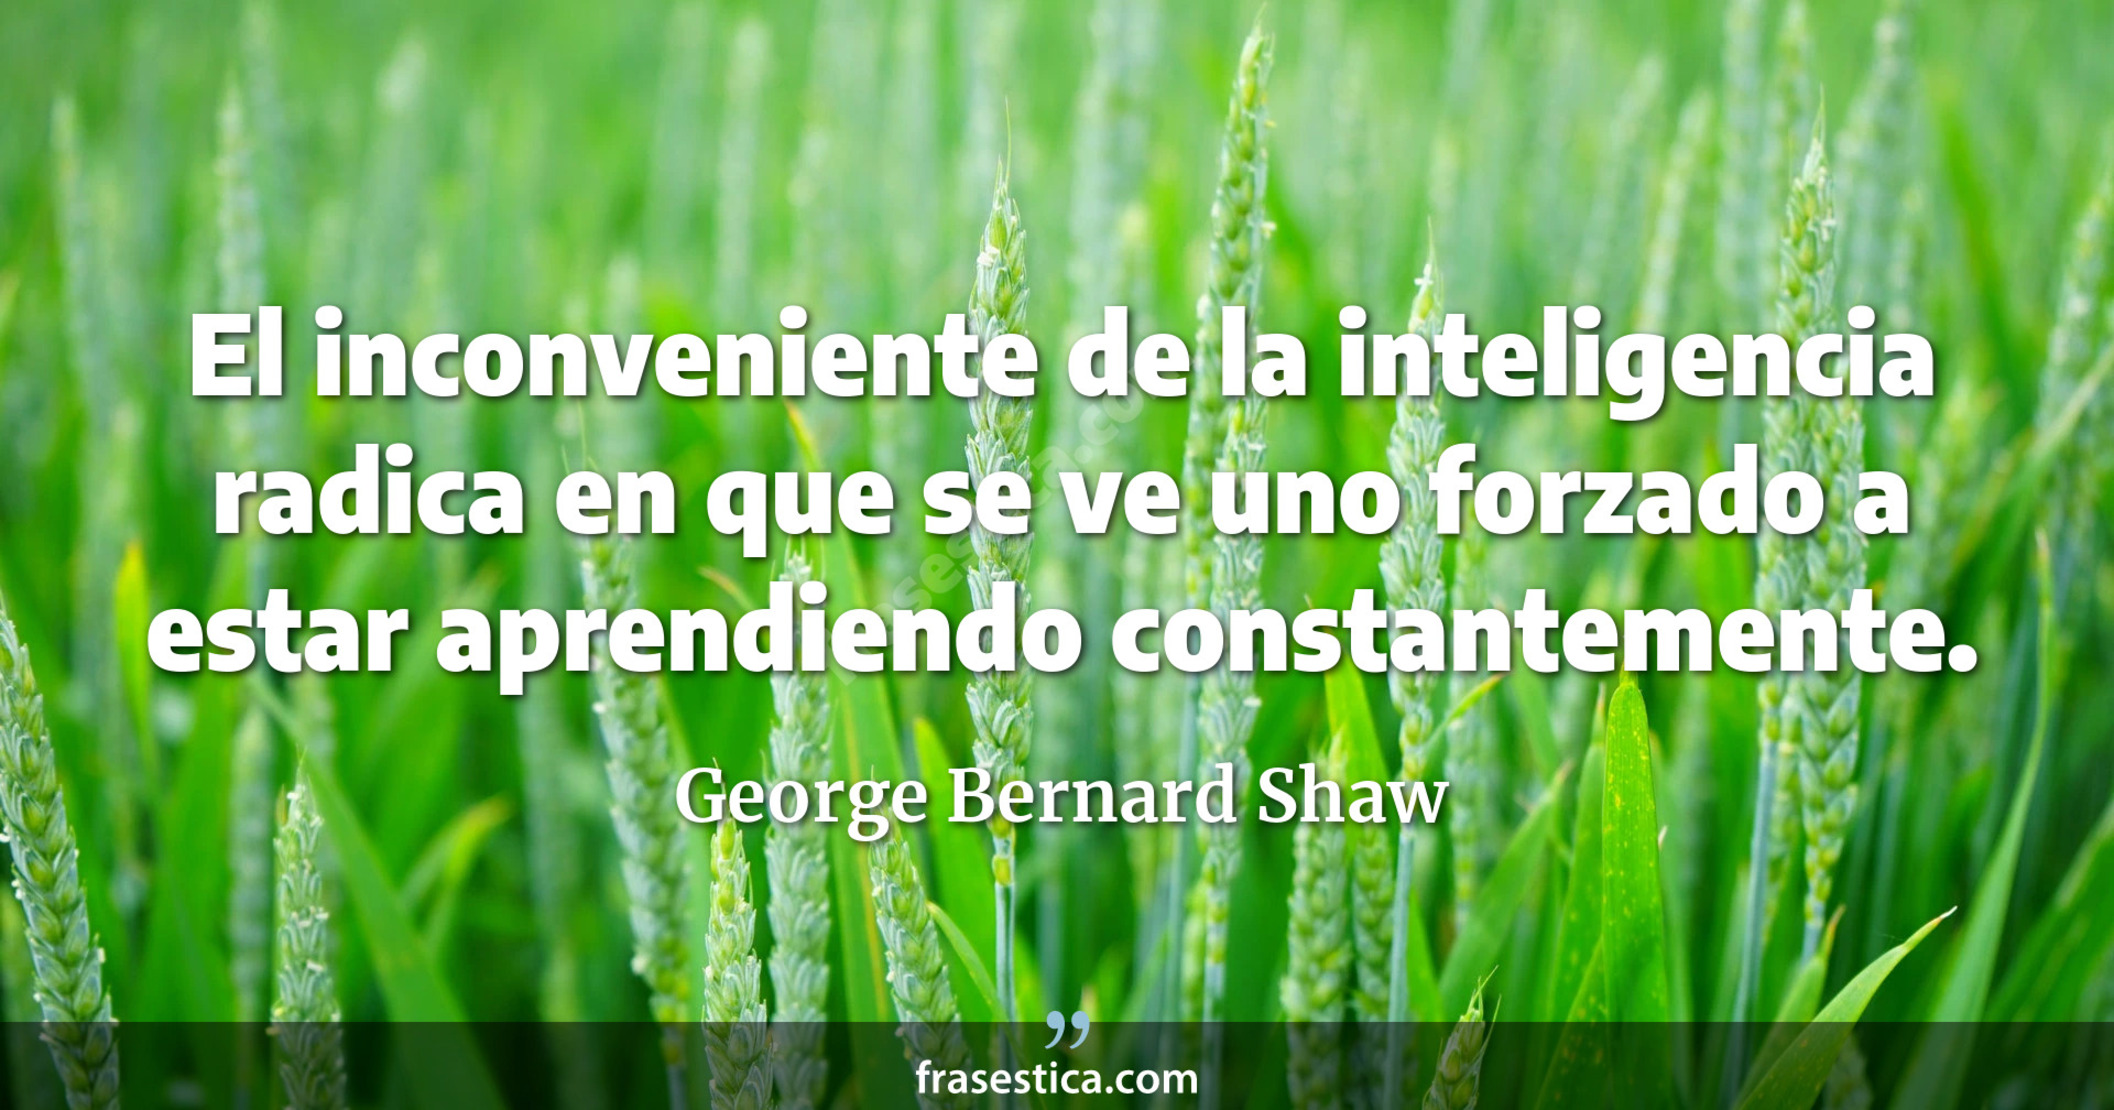 El inconveniente de la inteligencia radica en que se ve uno forzado a estar aprendiendo constantemente. - George Bernard Shaw